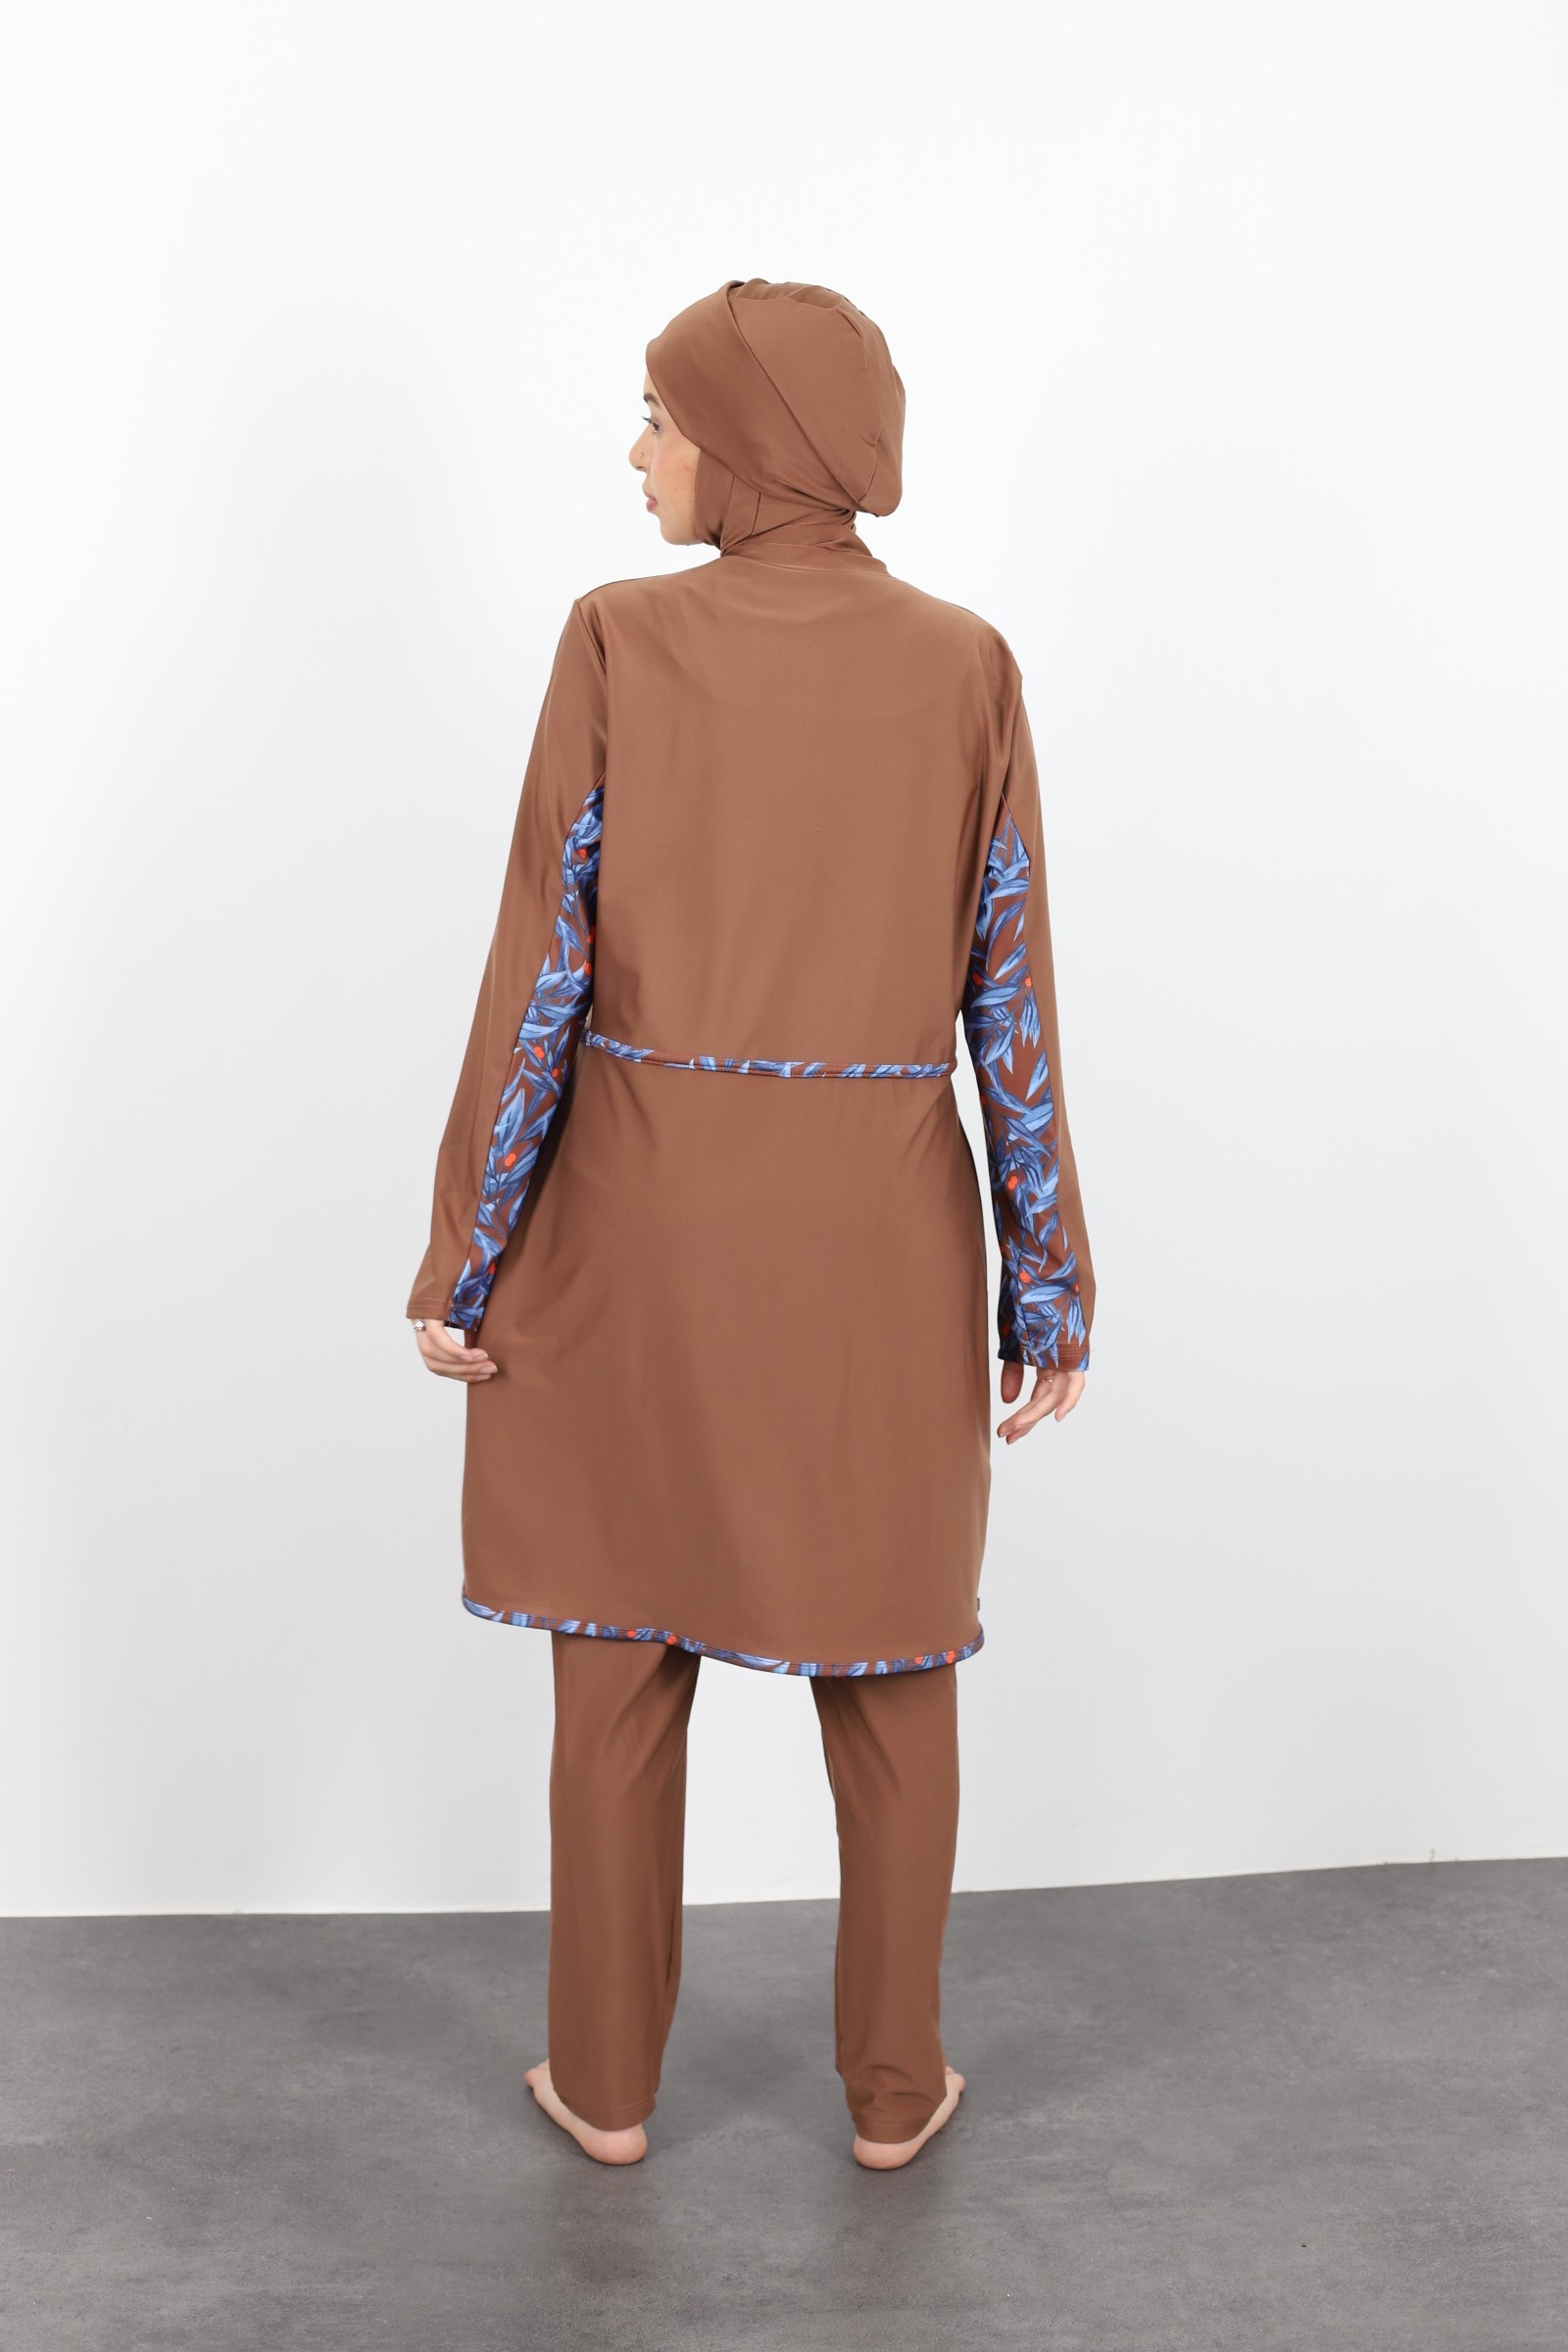 Burkini tunique et pantalon large pour femme femme voilée maillot 